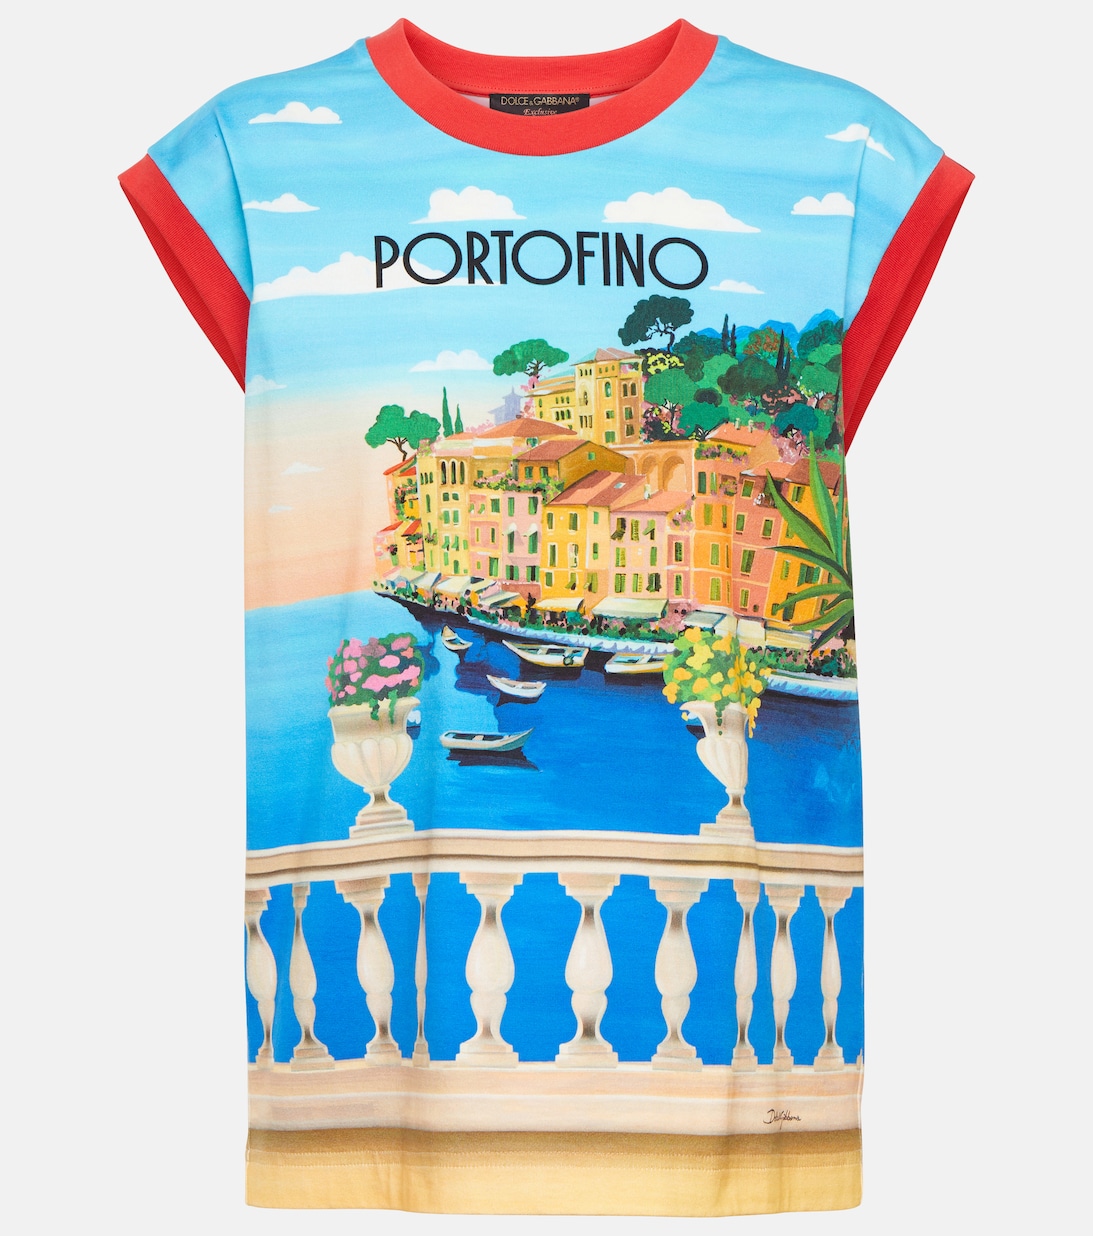 Футболка Portofino. Футболка Portofino спицами.